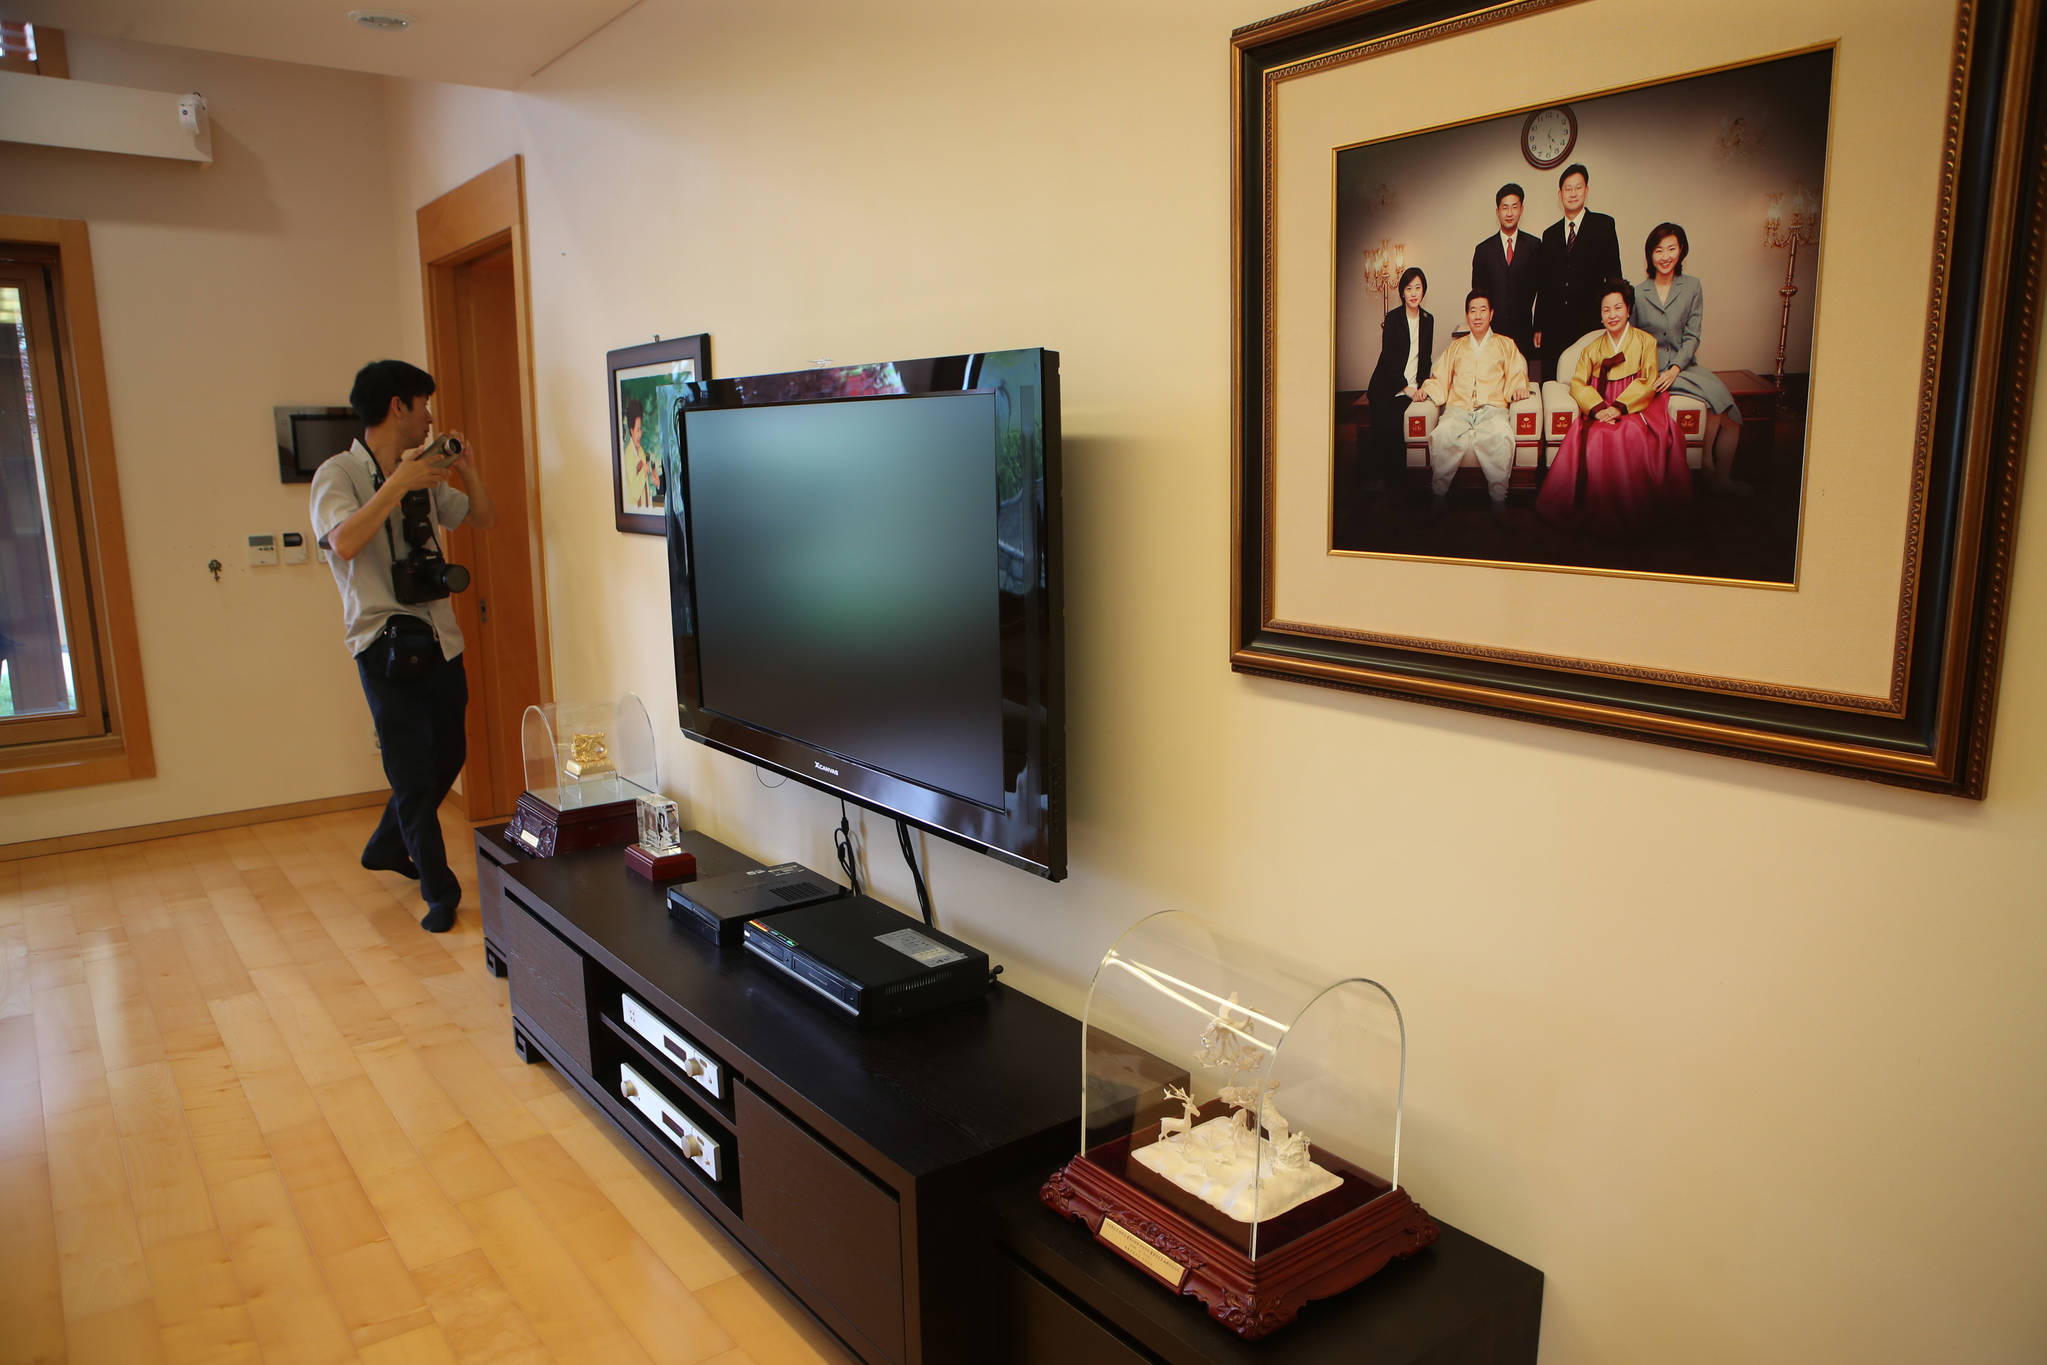 거실에 걸려있는 고 노무현 전 대통령 가족사진.